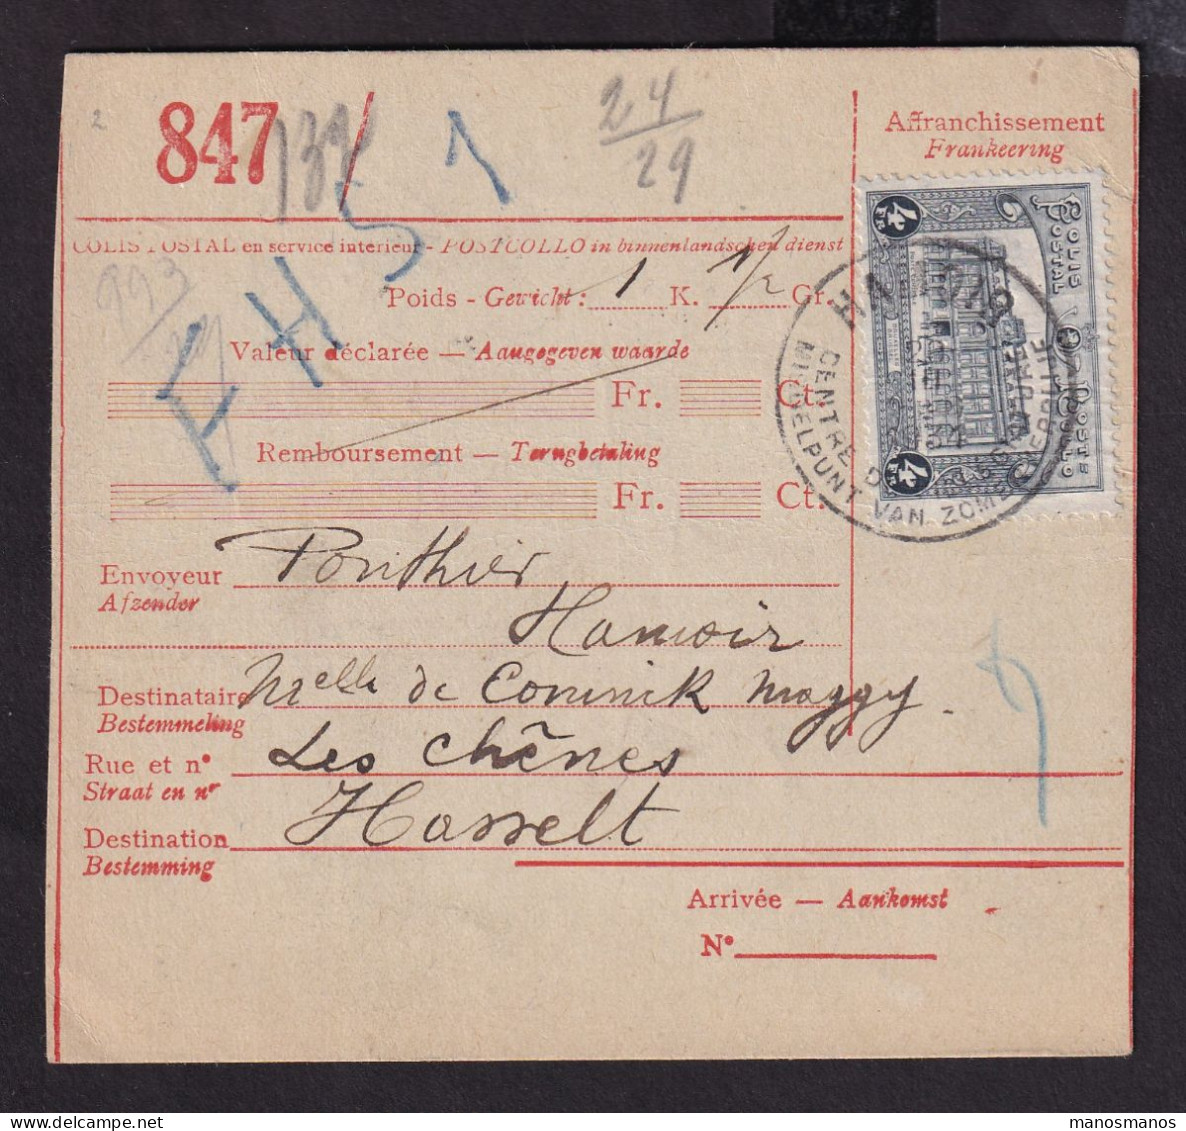 DDFF 147 - Formule De Colis Postal Cachet Touristique HAMOIR 1931 Vers Gare De HASSELT - Expéditeur Ponthier - Dokumente & Fragmente